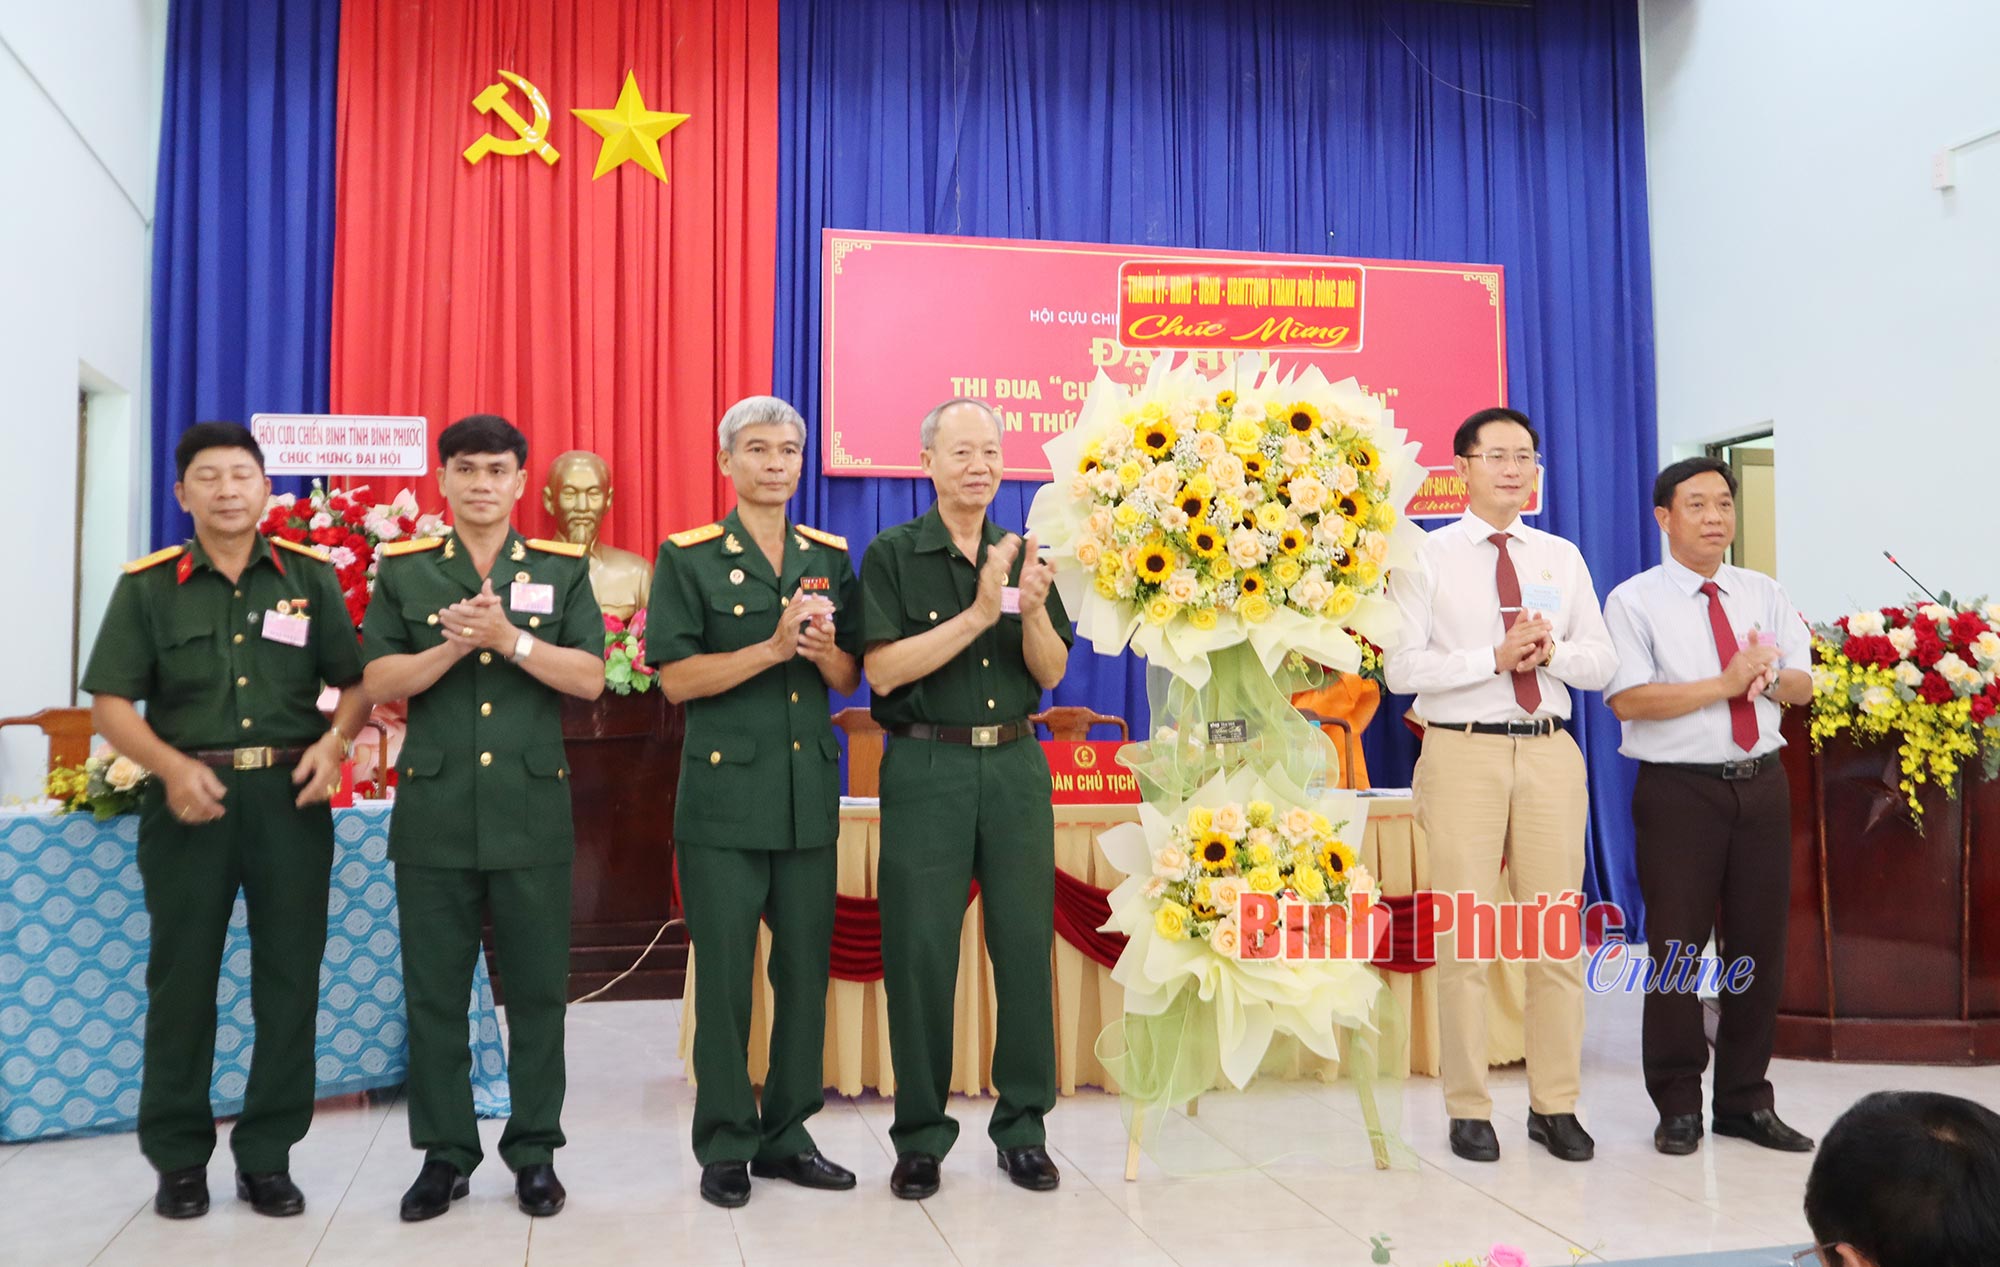 Đại hội thi đua "Cựu chiến binh gương mẫu" thành phố Đồng Xoài